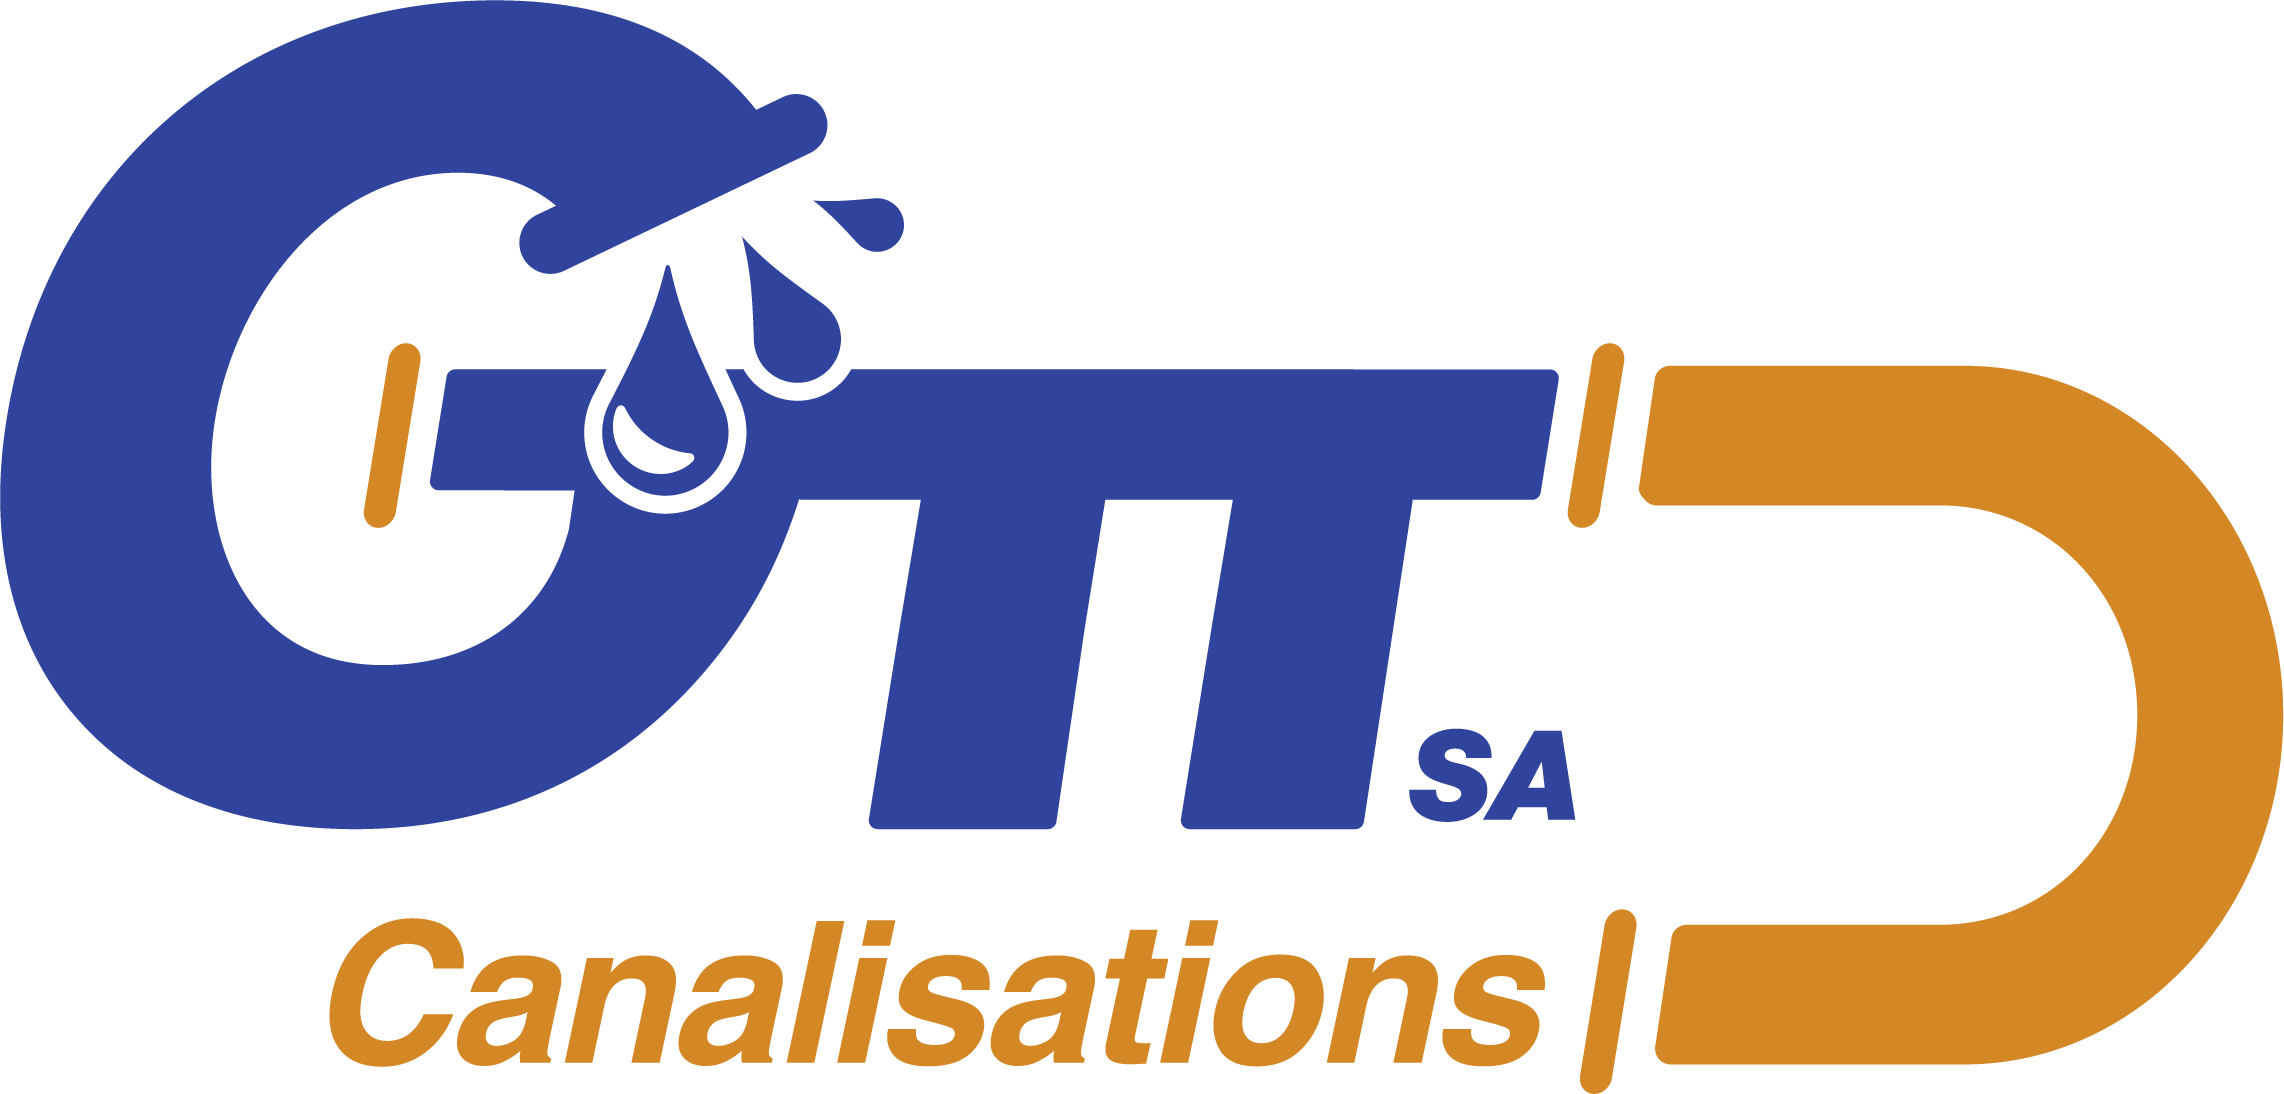 GTT Canalisations SA